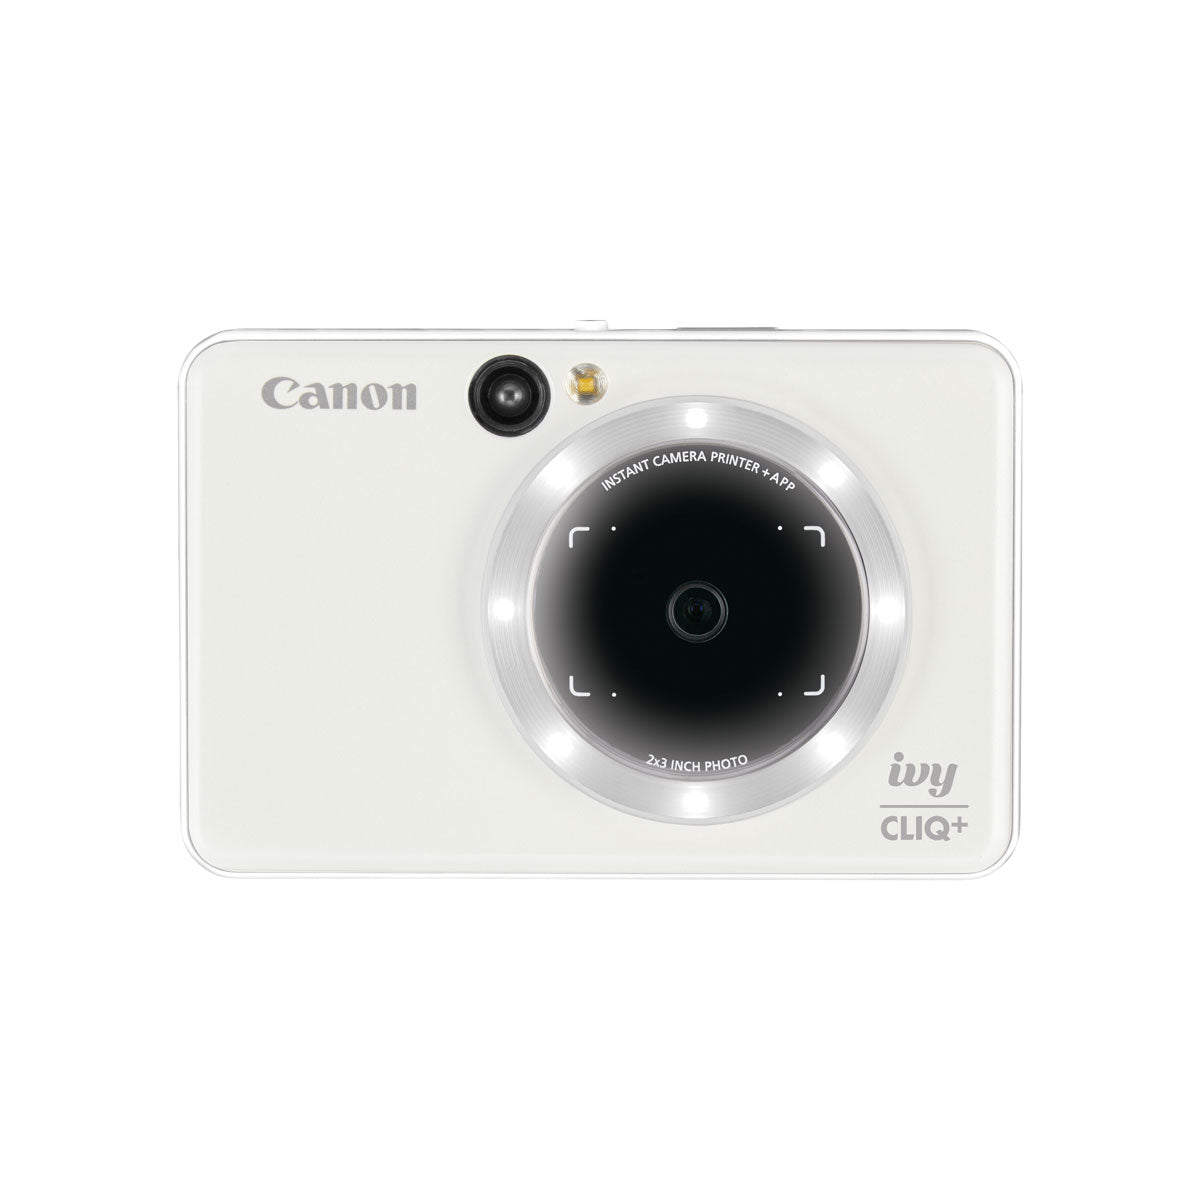 Canon IVY Cliq+ Instant Camera Printer (Pearl White)